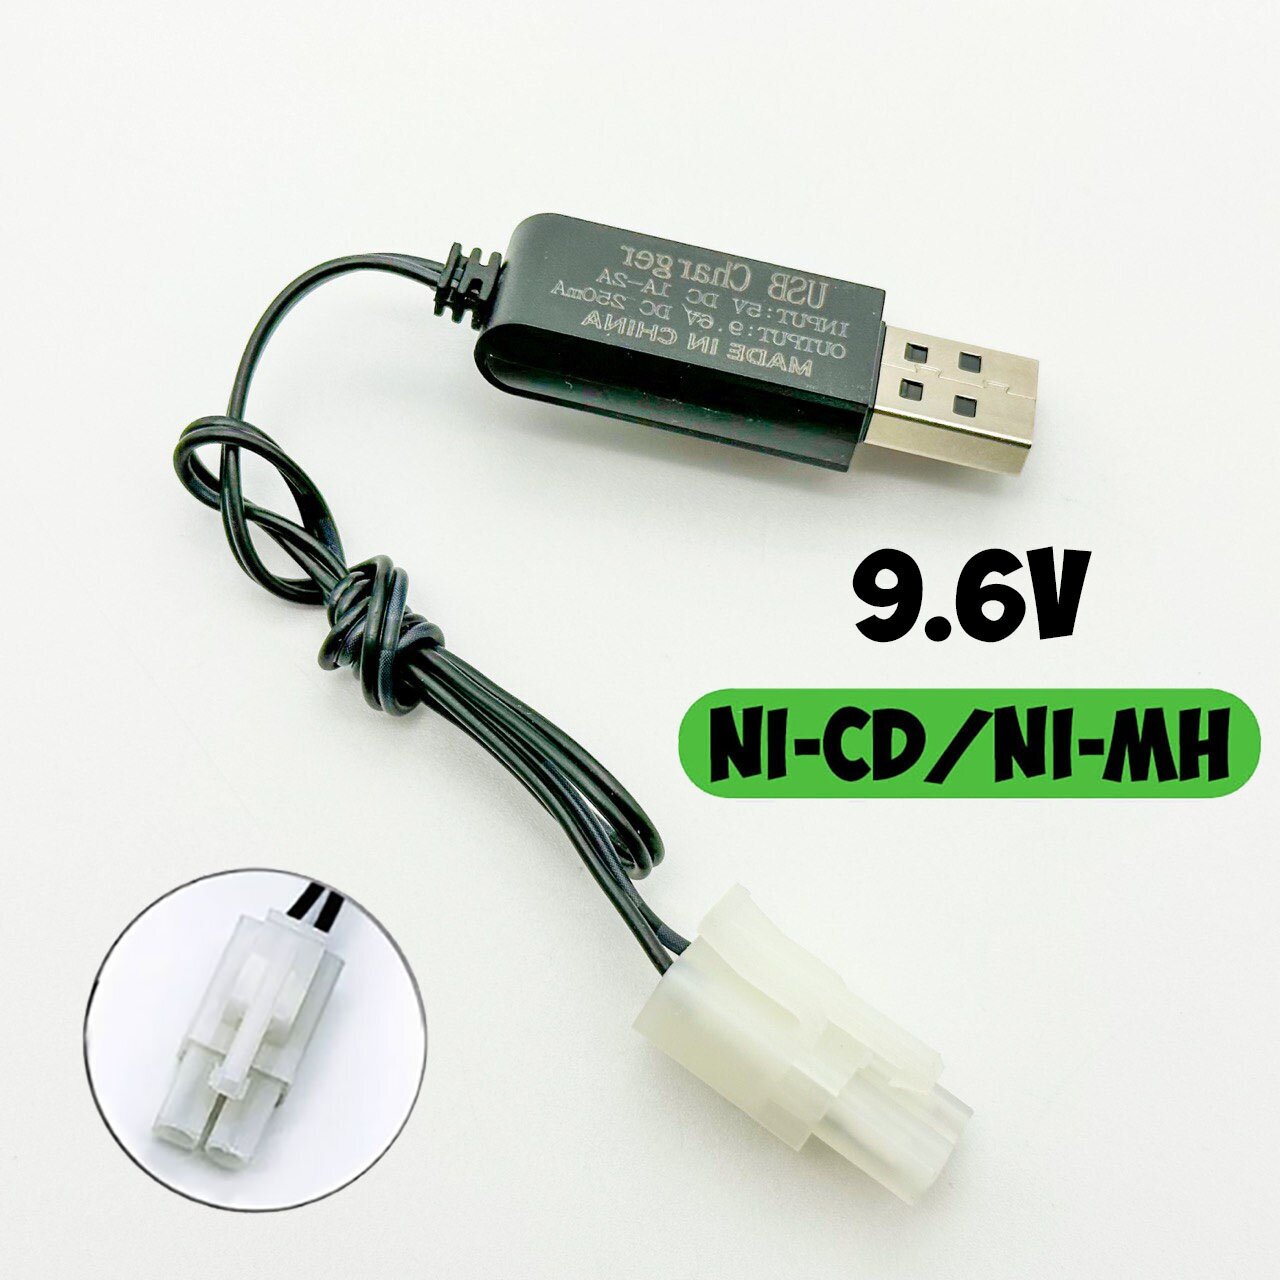 USB зарядное устройство 96V для Ni-Cd Ni-MH аккумуляторов 96 Вольт зарядка разъем екер Тамия (Tamiya) зарядка на р/у машинку-перевертыш